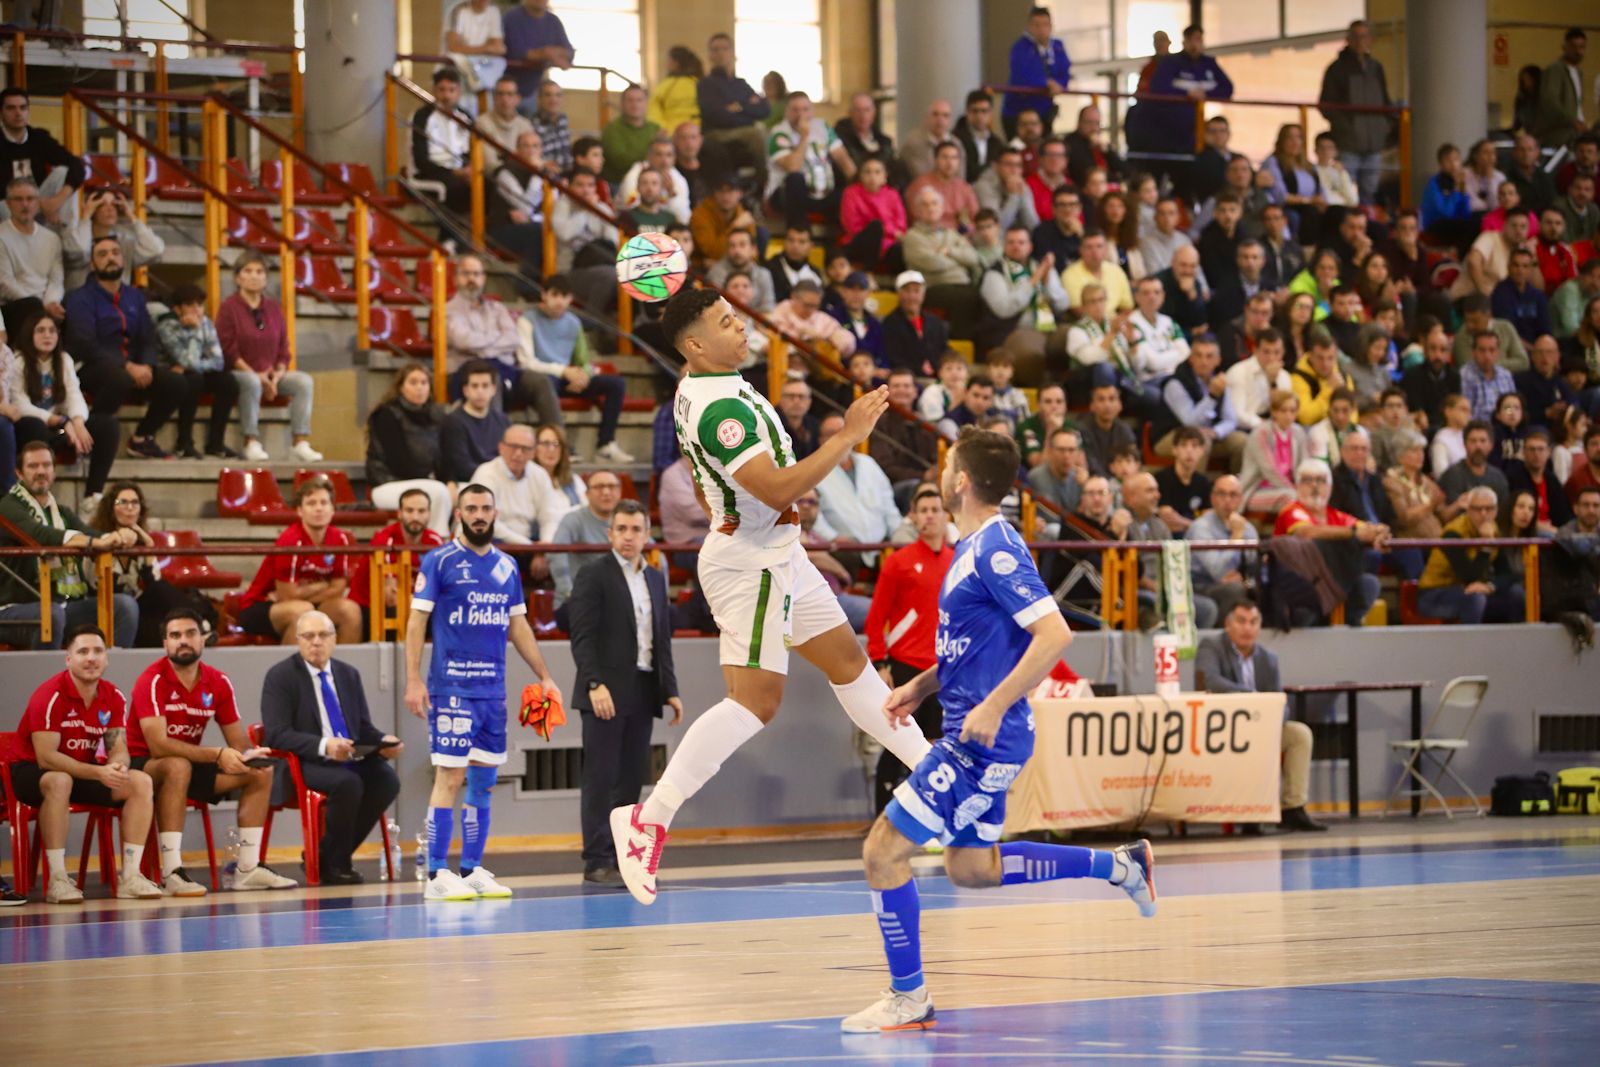 Córdoba Futsal - Manzanares : el partido en Vista Alegre en imágenes